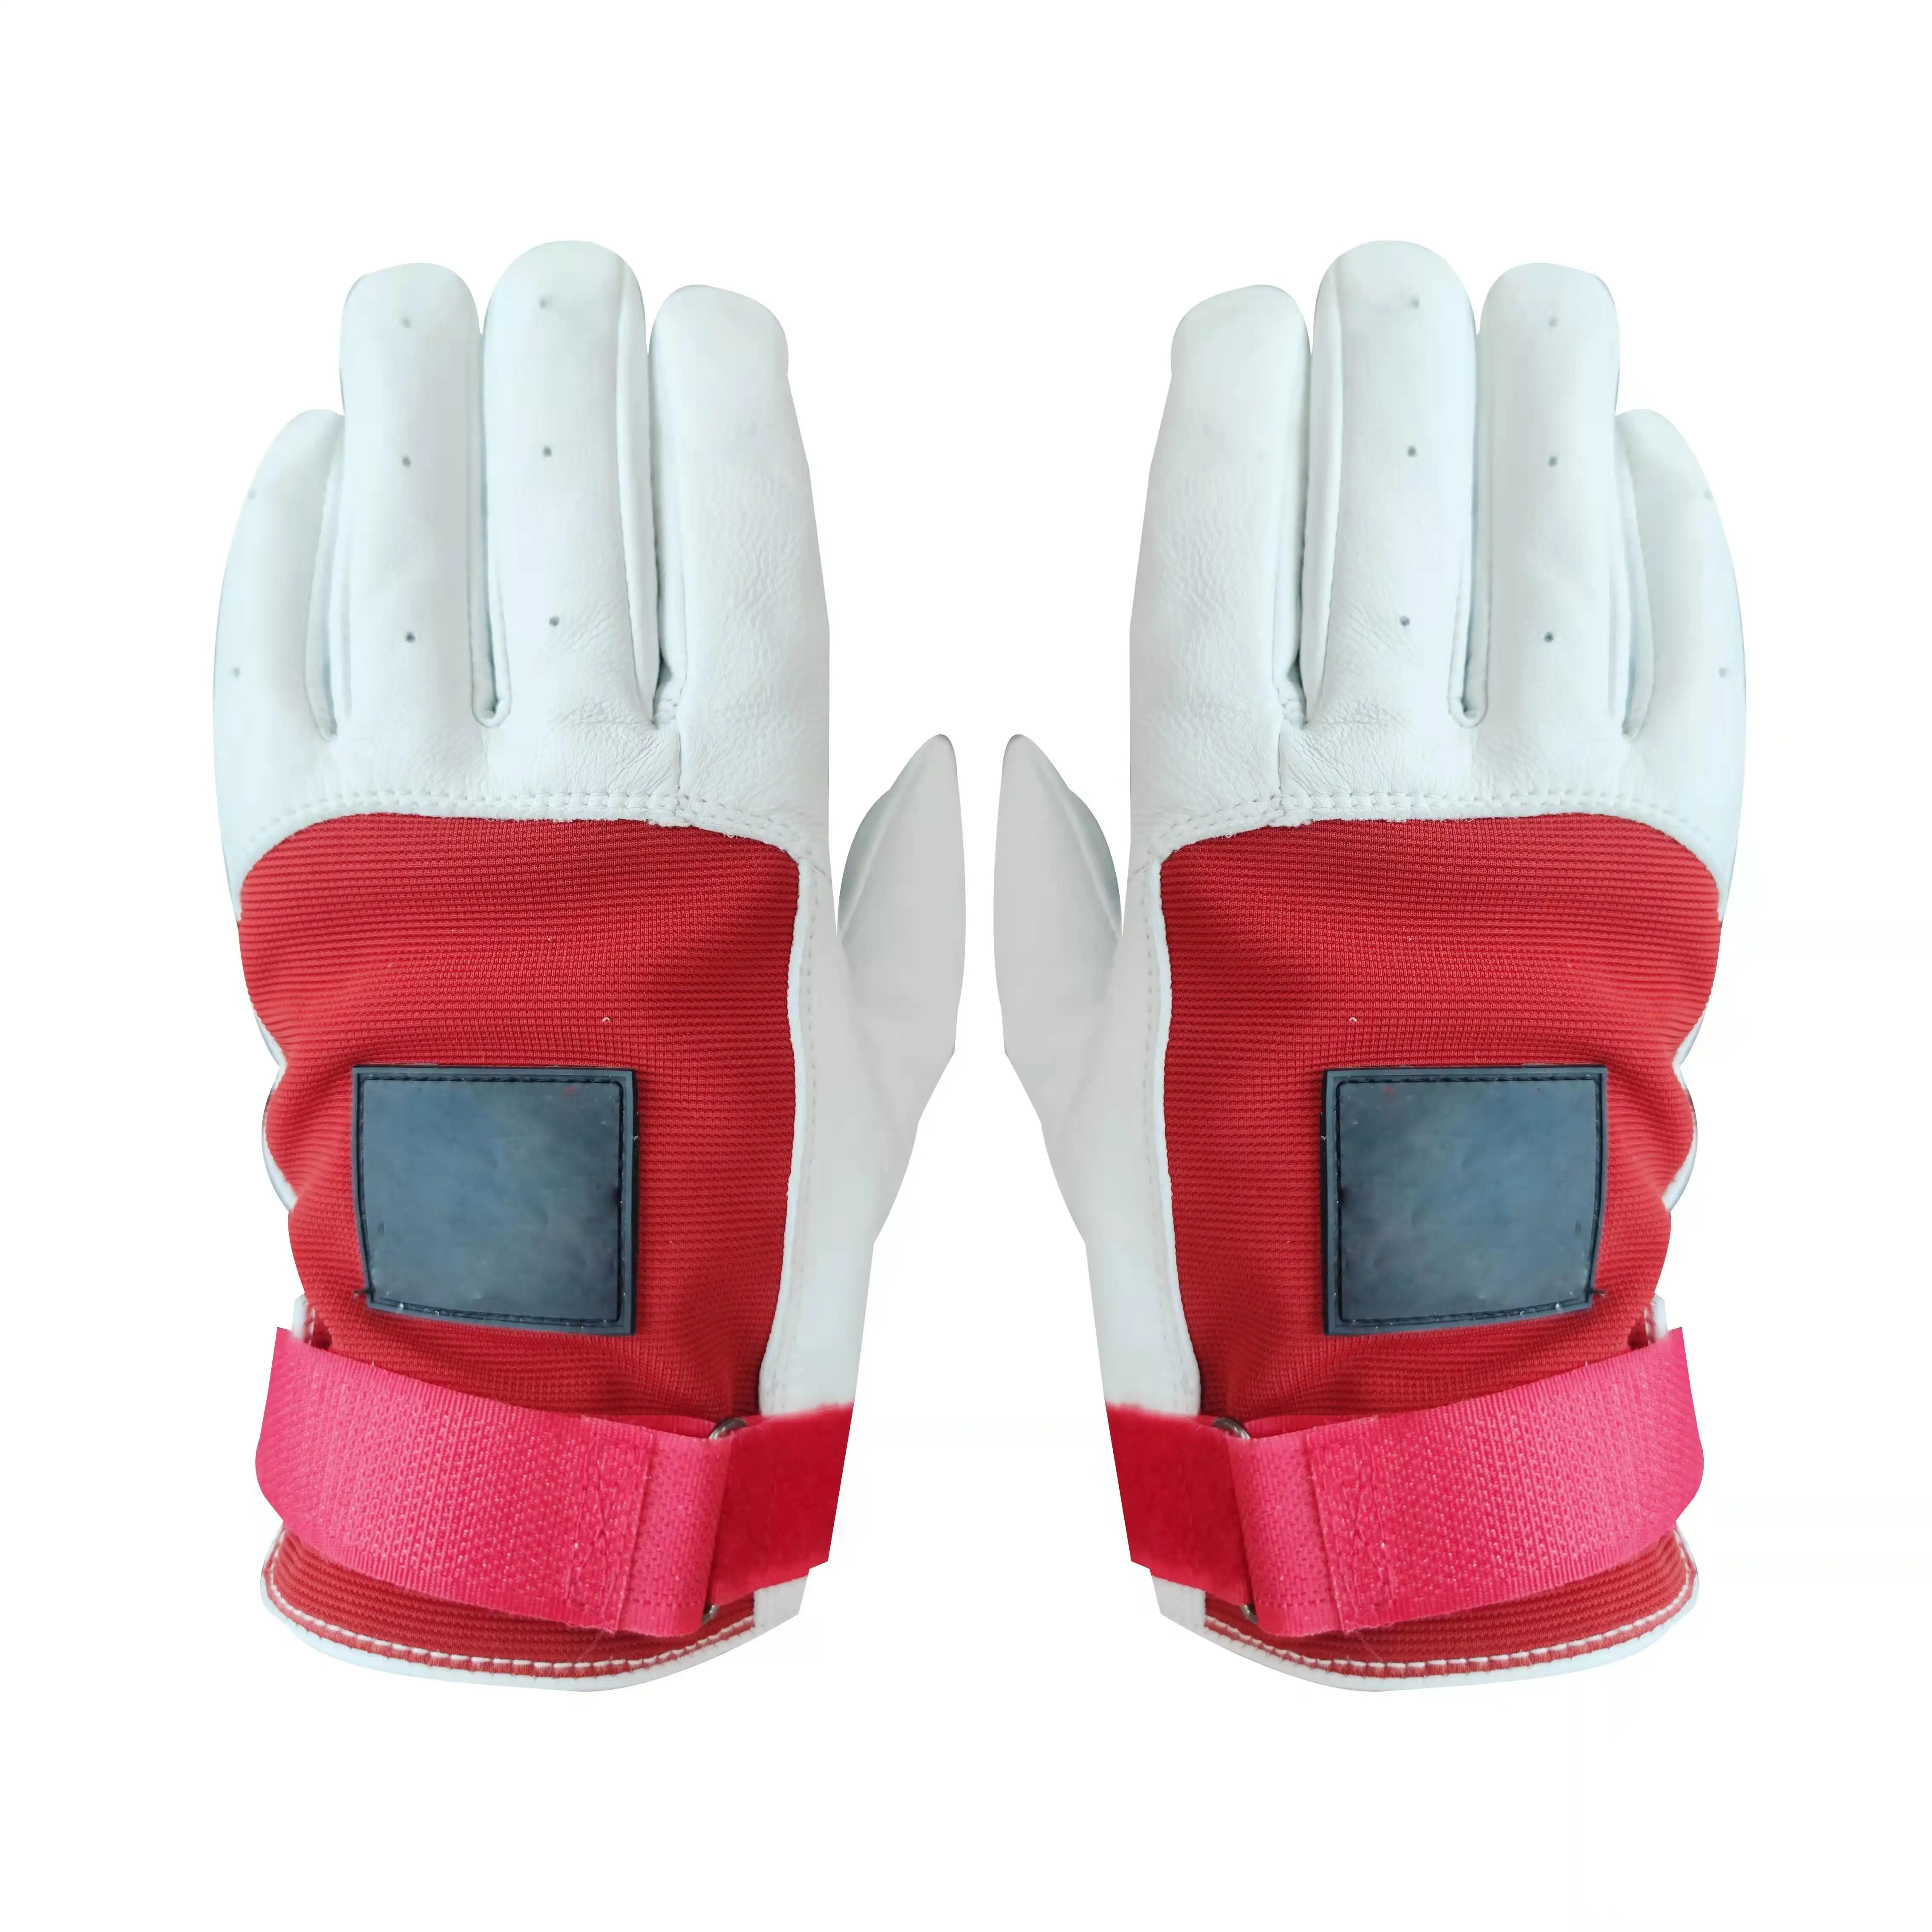 Дешевые спортивные перчатки из козьей кожи, спортивные перчатки для гандбола, цветные перчатки для гандбола на заказ